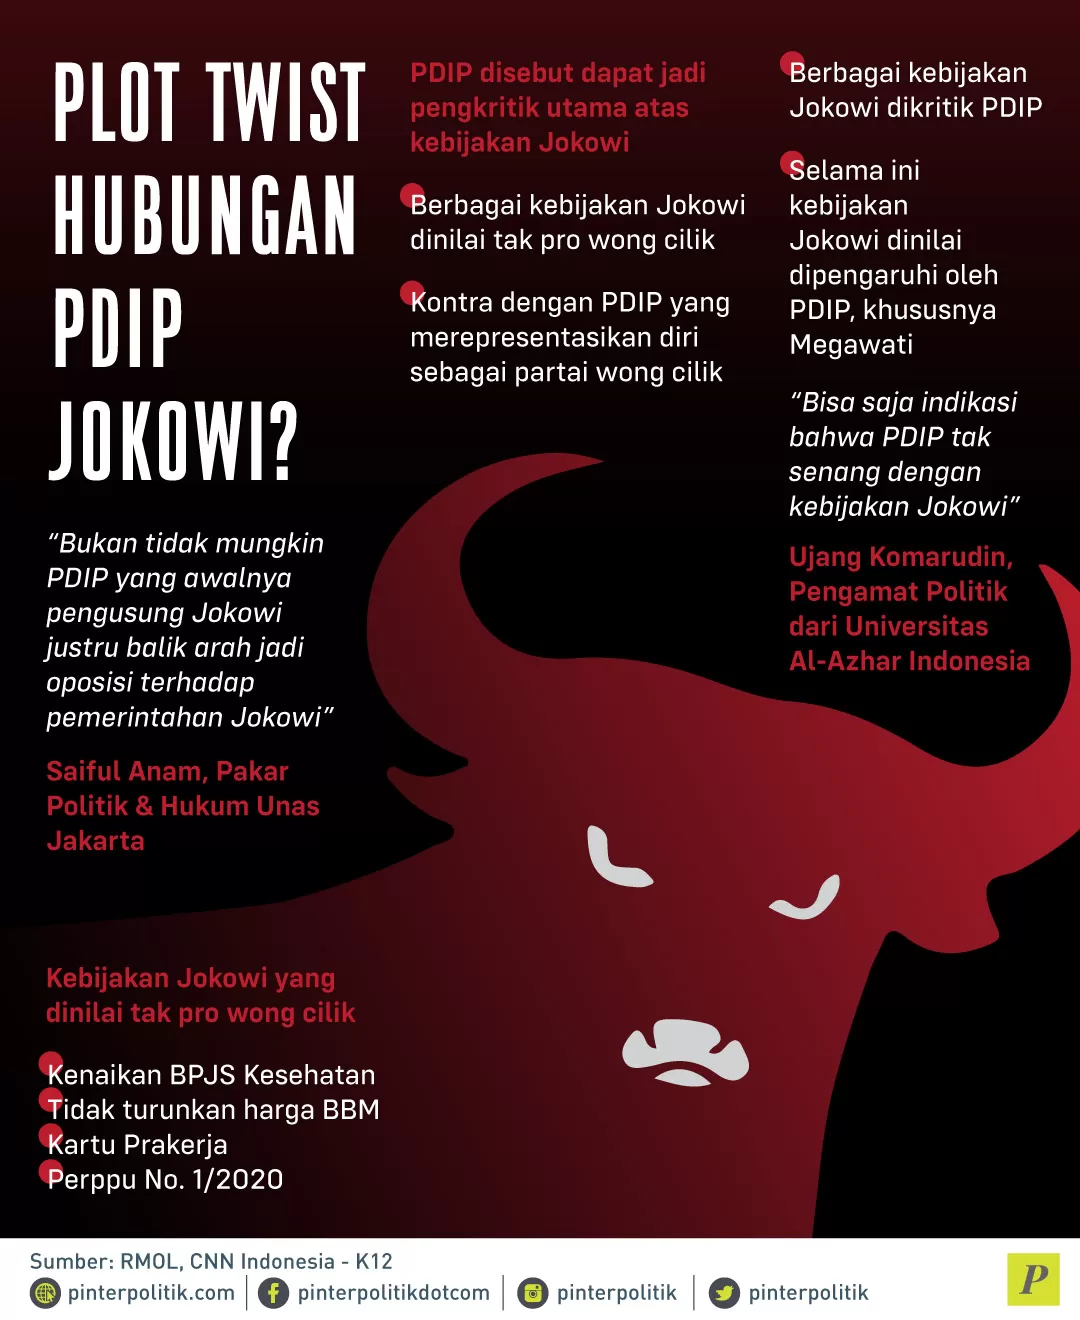 PDIP pengkritik utama atas kebijakan Jokowi